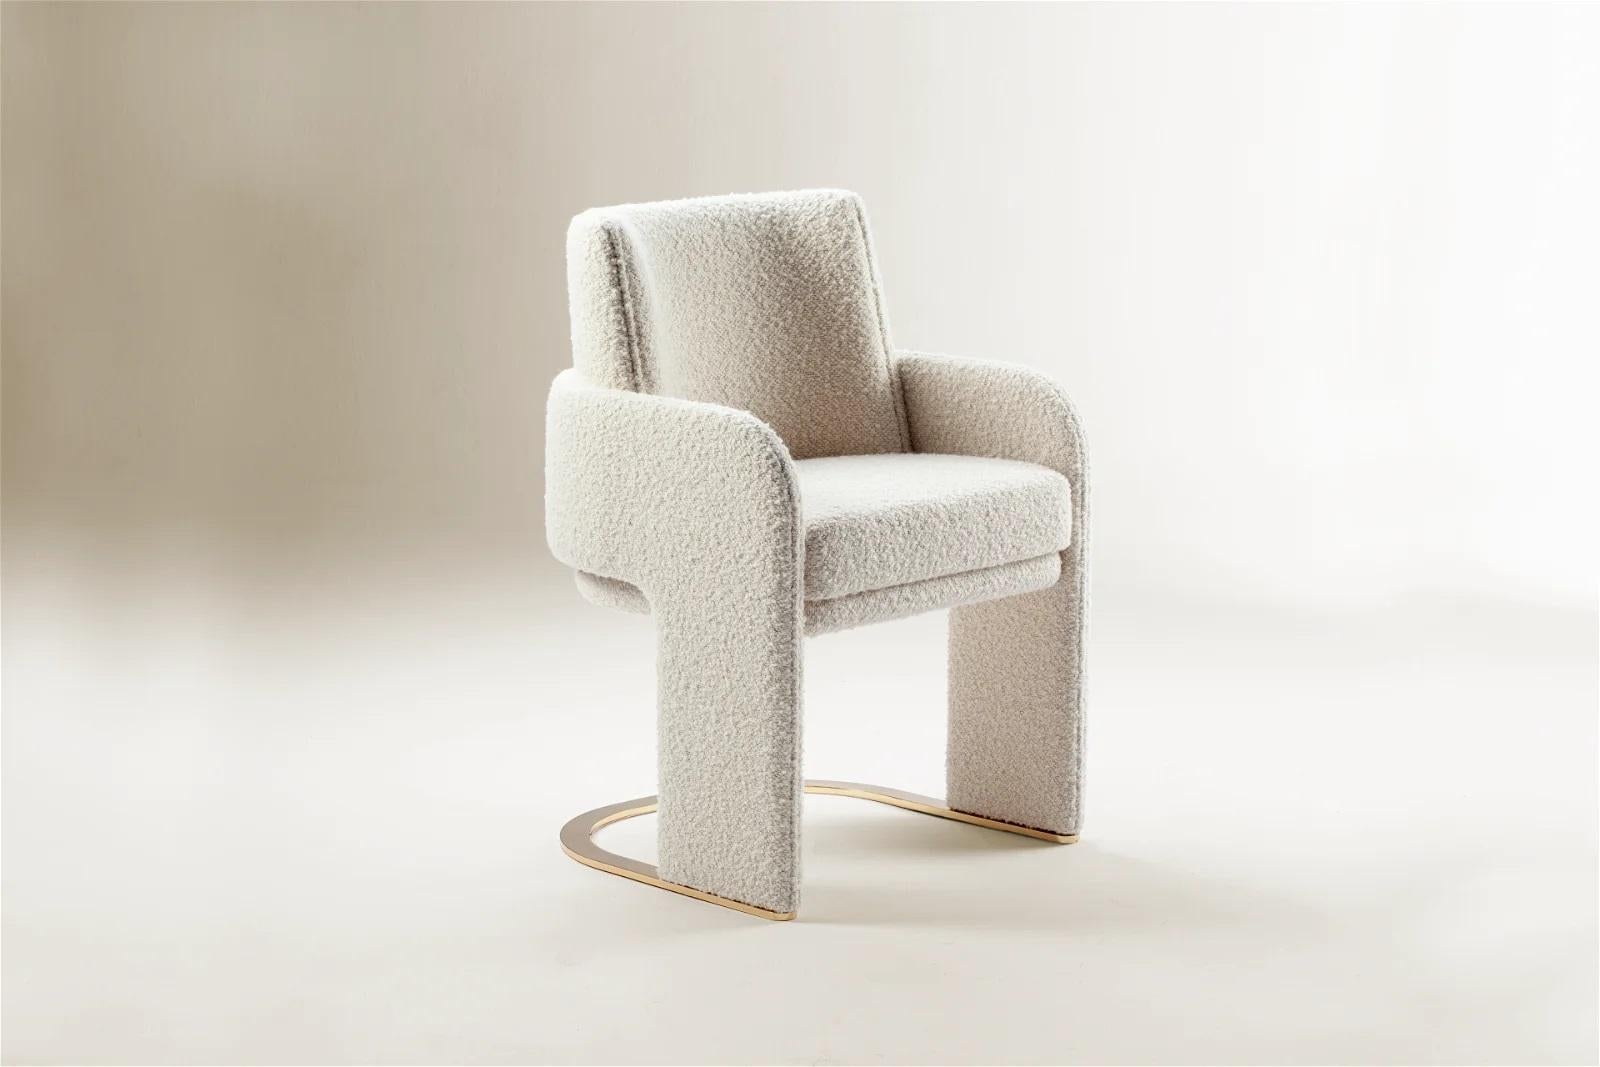 La chaise Odisseia incarne l'esprit esthétique de l'ère spatiale, un nouveau type de luxe discret et de confort inspiré d'une ère futuriste créée par de nouvelles expériences visuelles et des concepts du futur. Cette pièce sans effort mais frappante